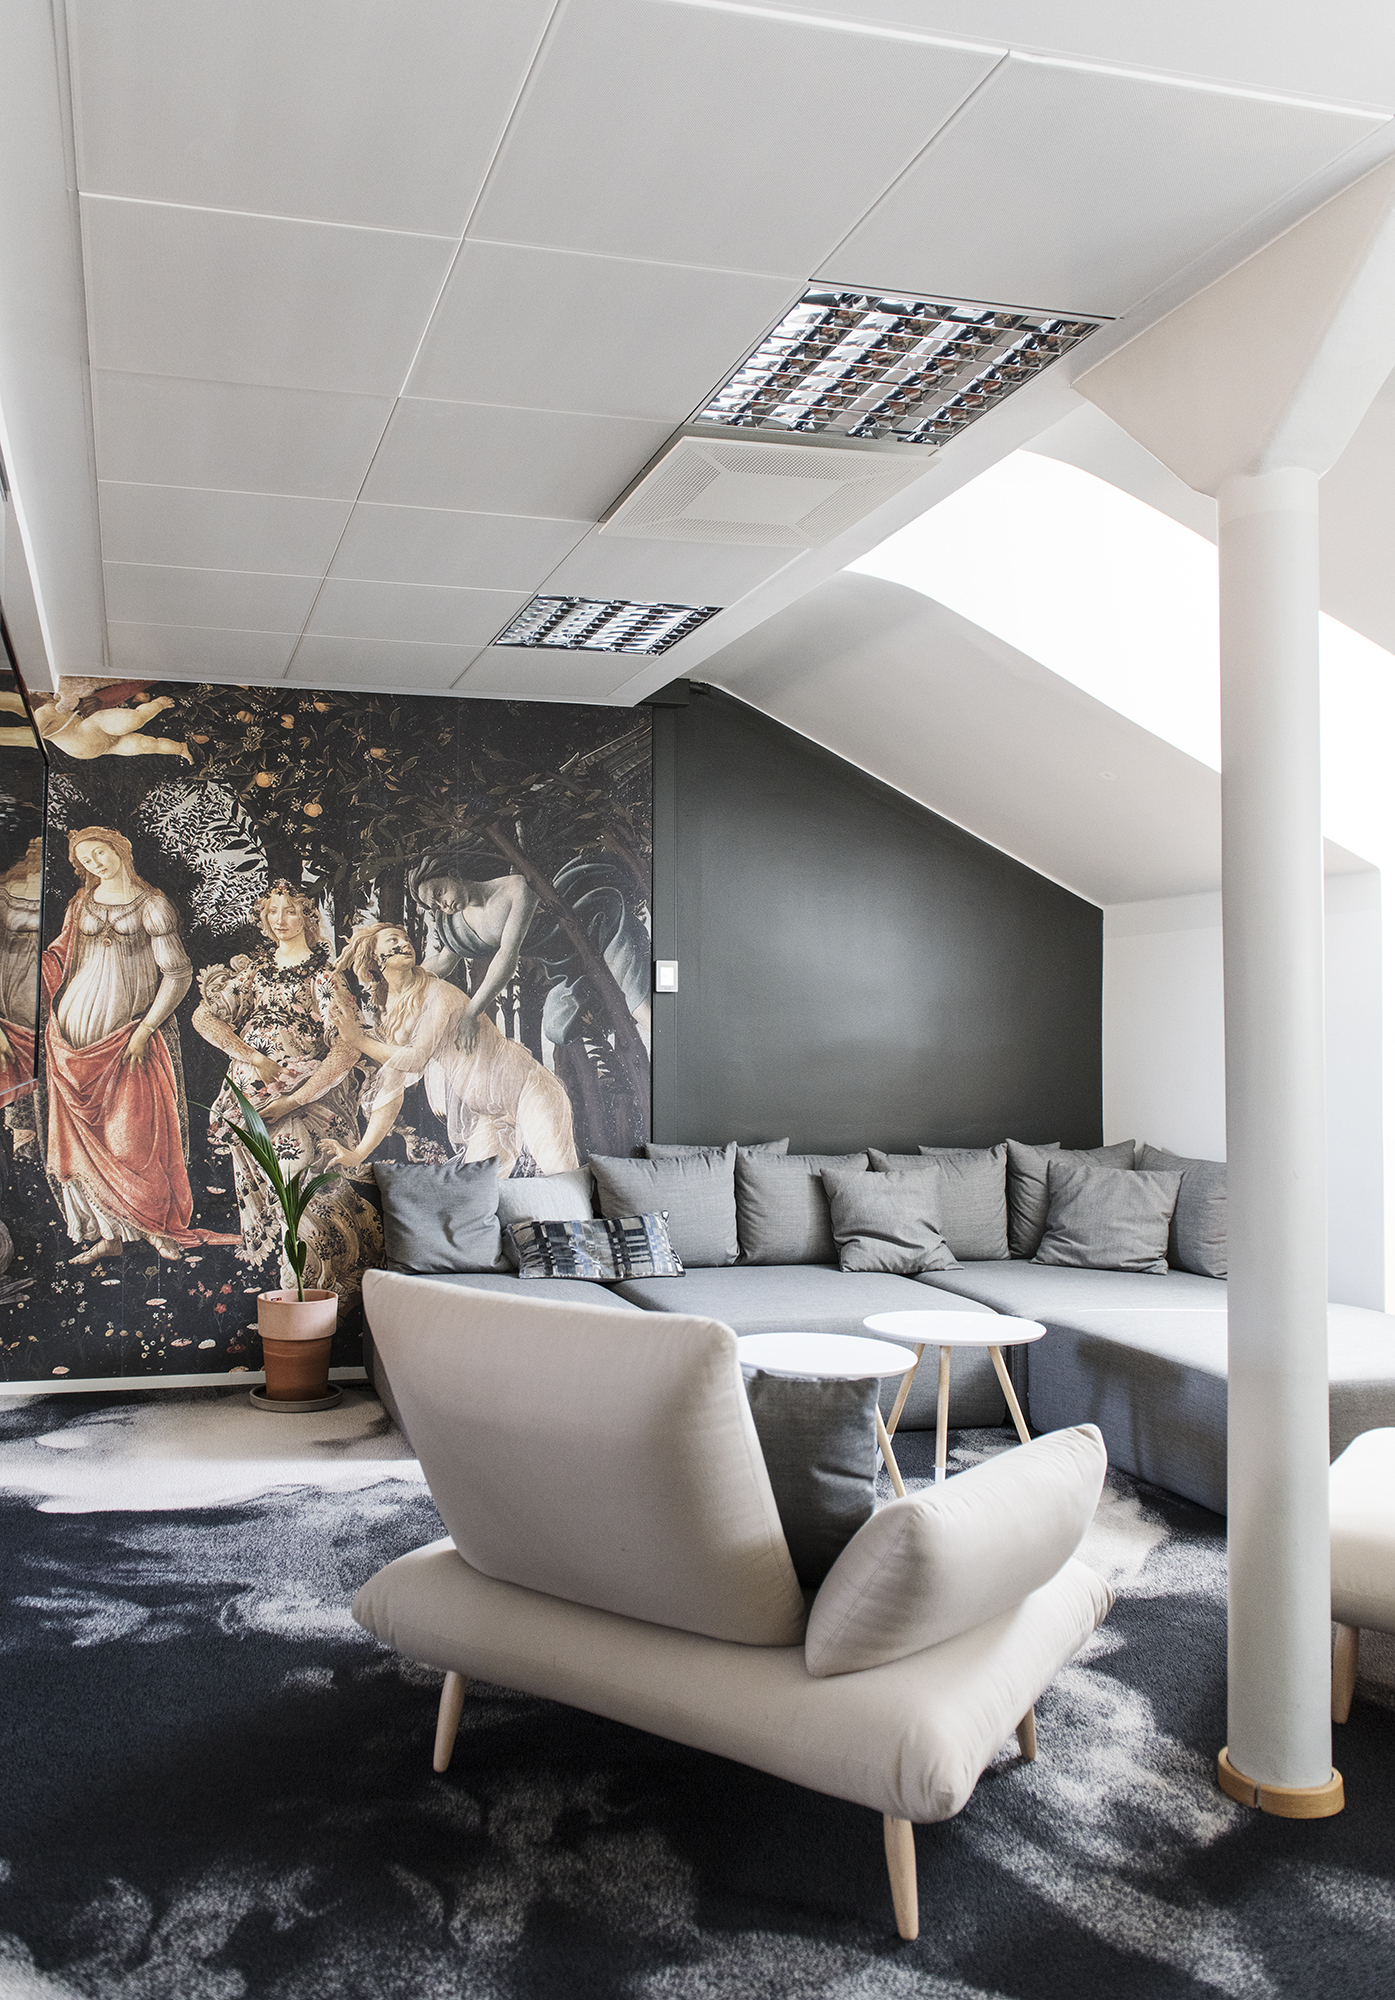 图片[3]|Franz设计办公室-赫尔辛基|ART-Arrakis | 建筑室内设计的创新与灵感